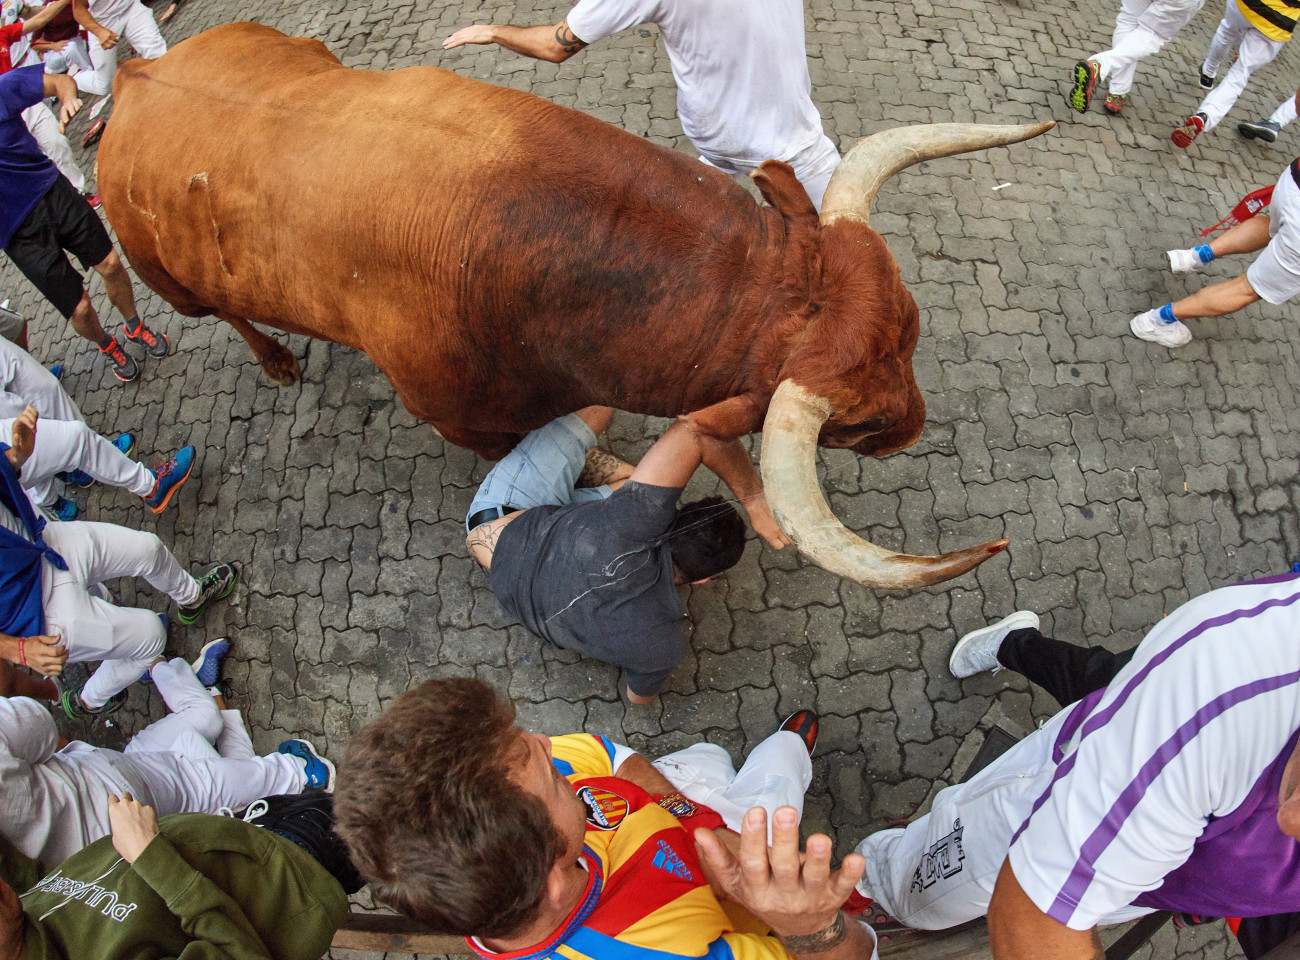 Elesik a bika mellett az egyik futó a San Fermín fesztiválon Pamplonában 2019. július 14-én. A spanyol város védőszentjének tiszteletére 1591 óta évente megrendezett kilencnapos fiesta egyik fő attrakciója a reggelenkénti bikafuttatás, amelynek során férfiak százai teszik próbára bátorságukat azzal, hogy az arénába hajtott állatok előtt végigszaladnak Pamplona utcáin.
MTI/EPA/Daniel Fernandez